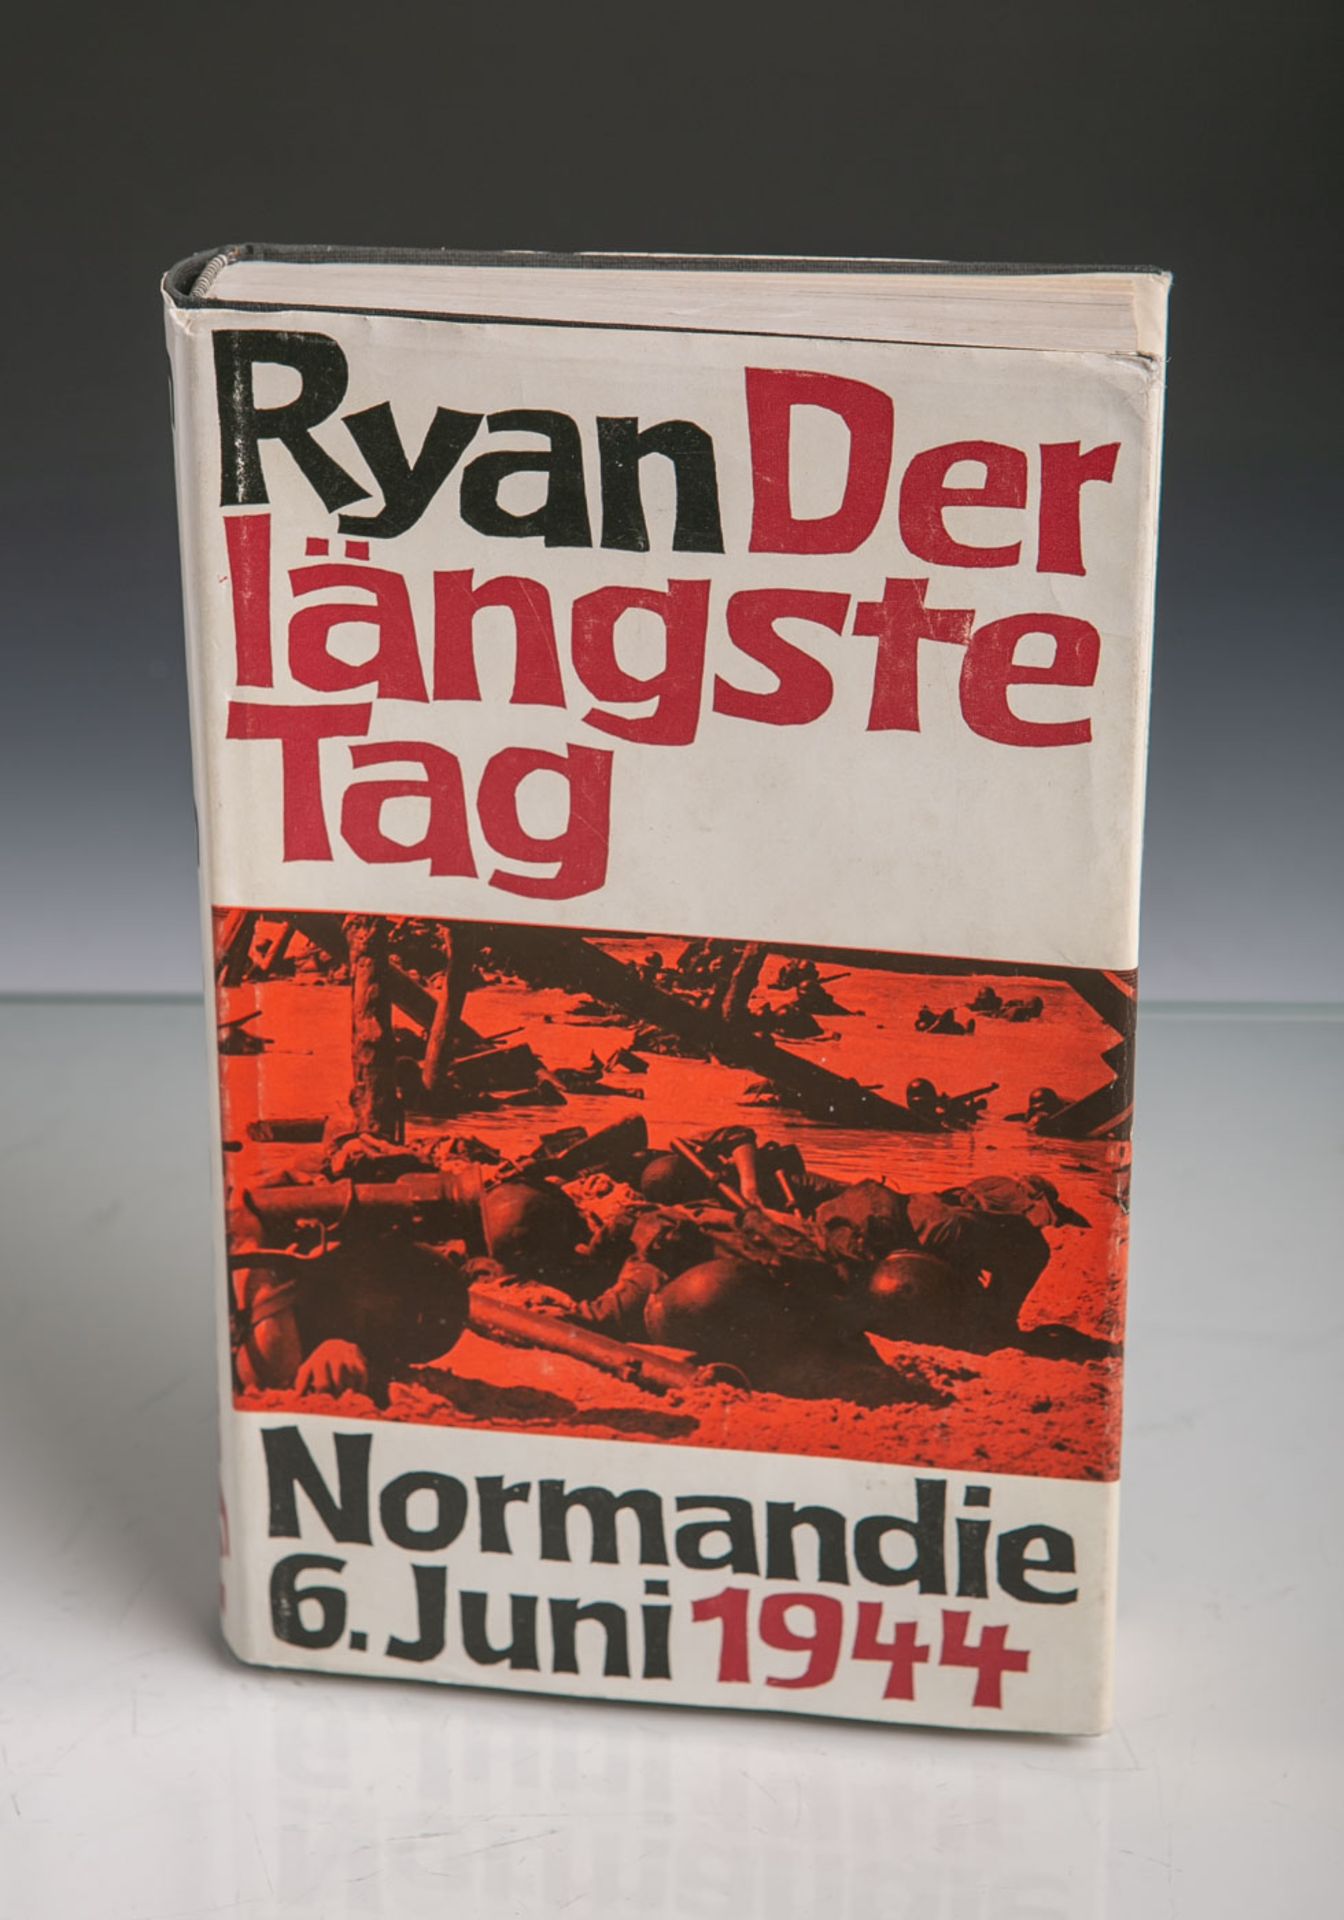 Ryan, Cornelius (Hrsg.), "Der längste Tag. Normandie: 6. Juni 1944", m. Abb., Verlag